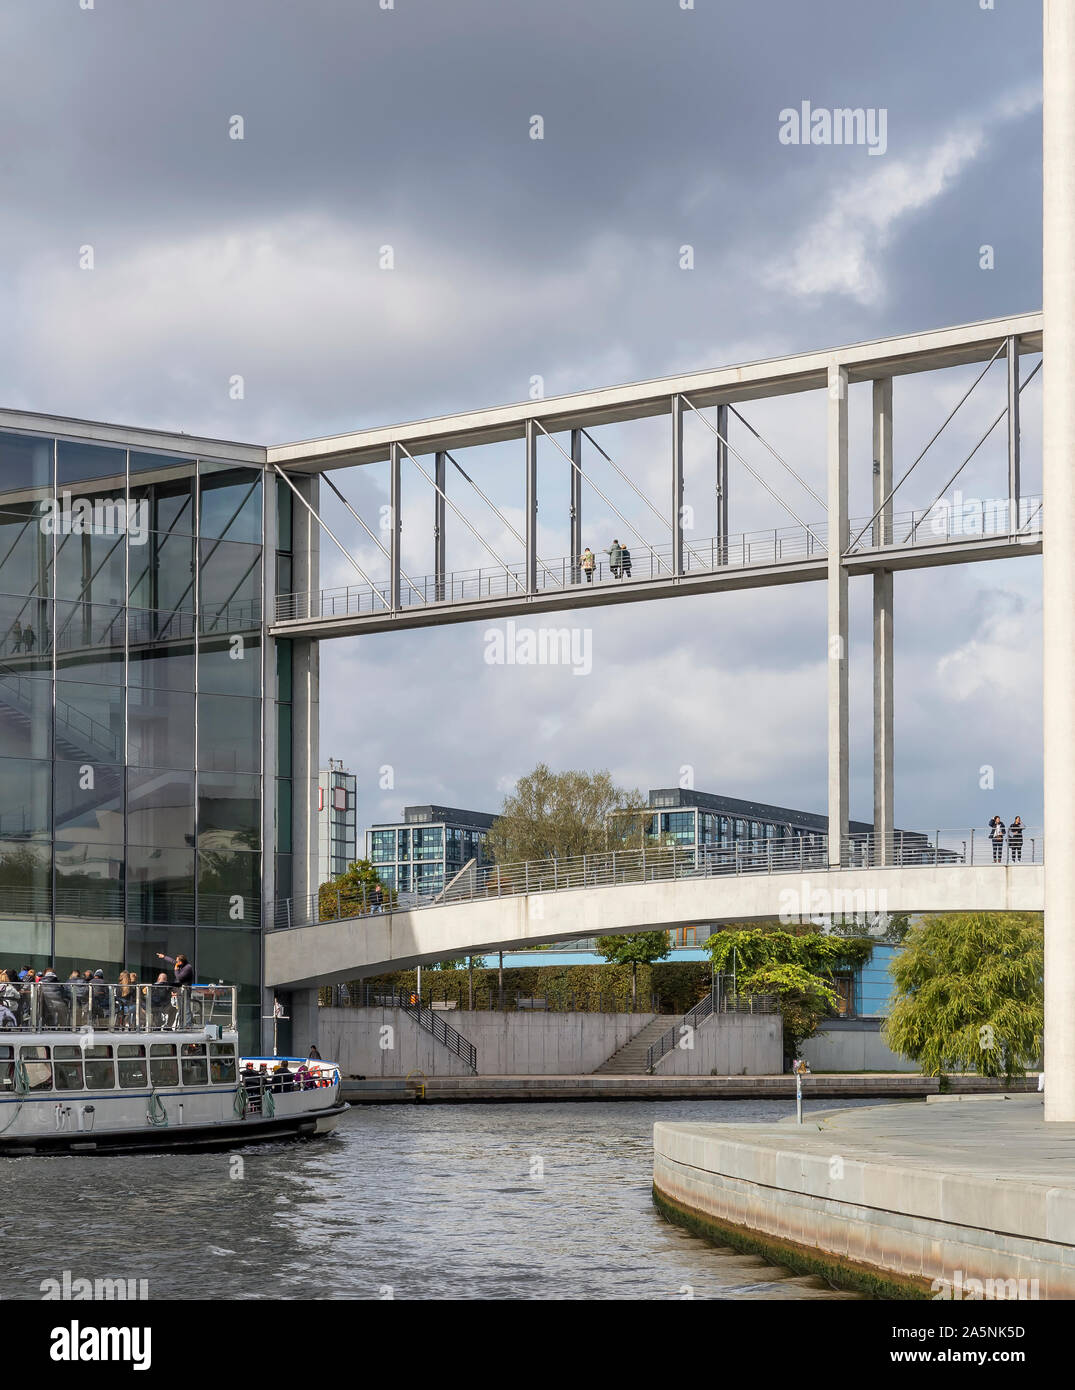 Crucero por el río Spree, en el centro histórico de Berlín, Alemania, con una vista de la doble puente peatonal que conecta los edificios gubernamentales Foto de stock